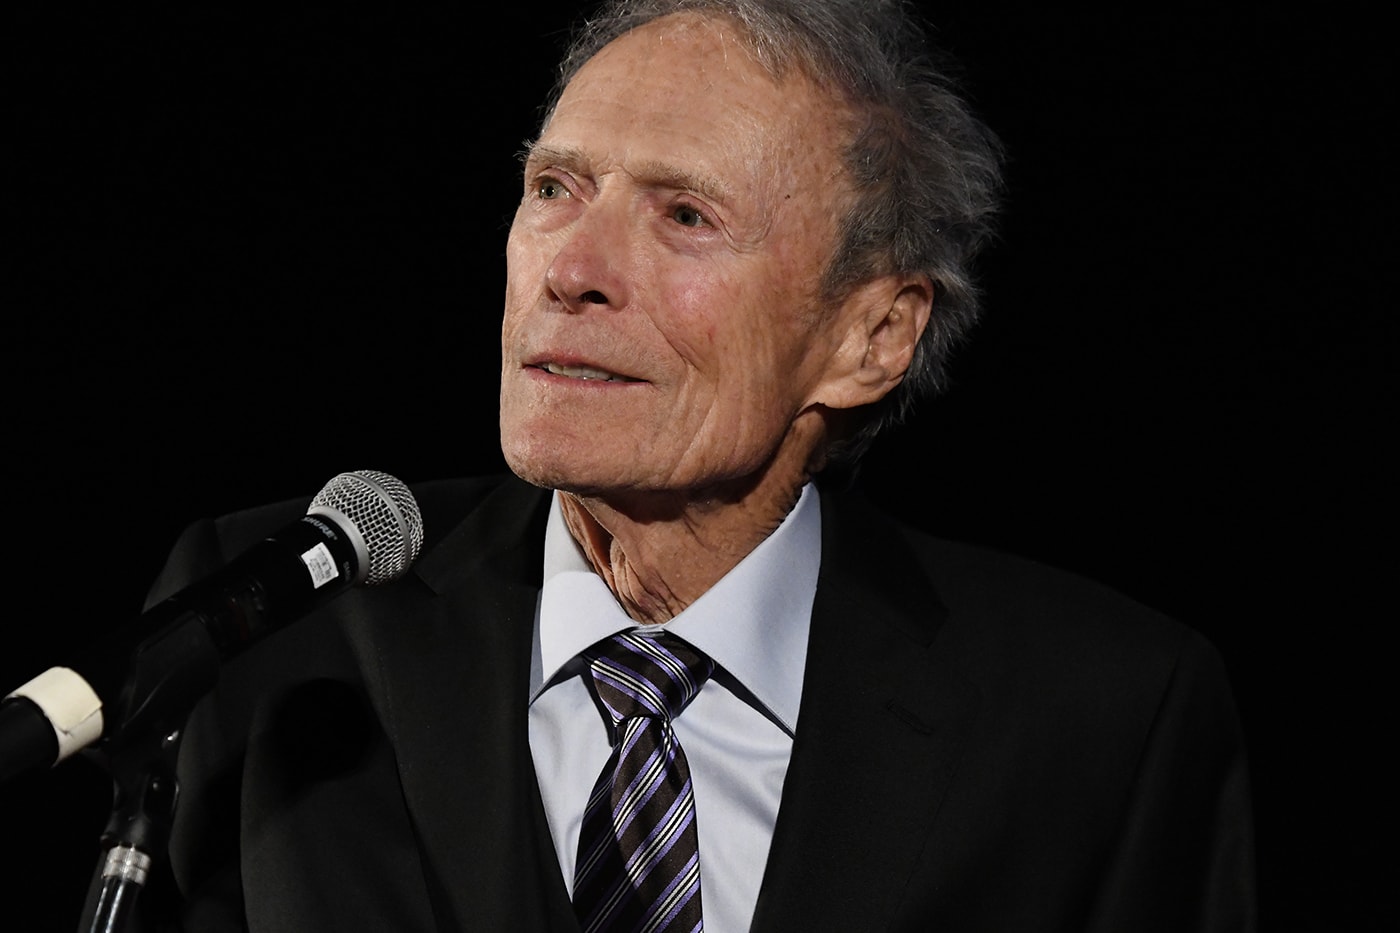 消息稱 92 歲 Clint Eastwood 計劃退休，生涯最後執導電影情報曝光